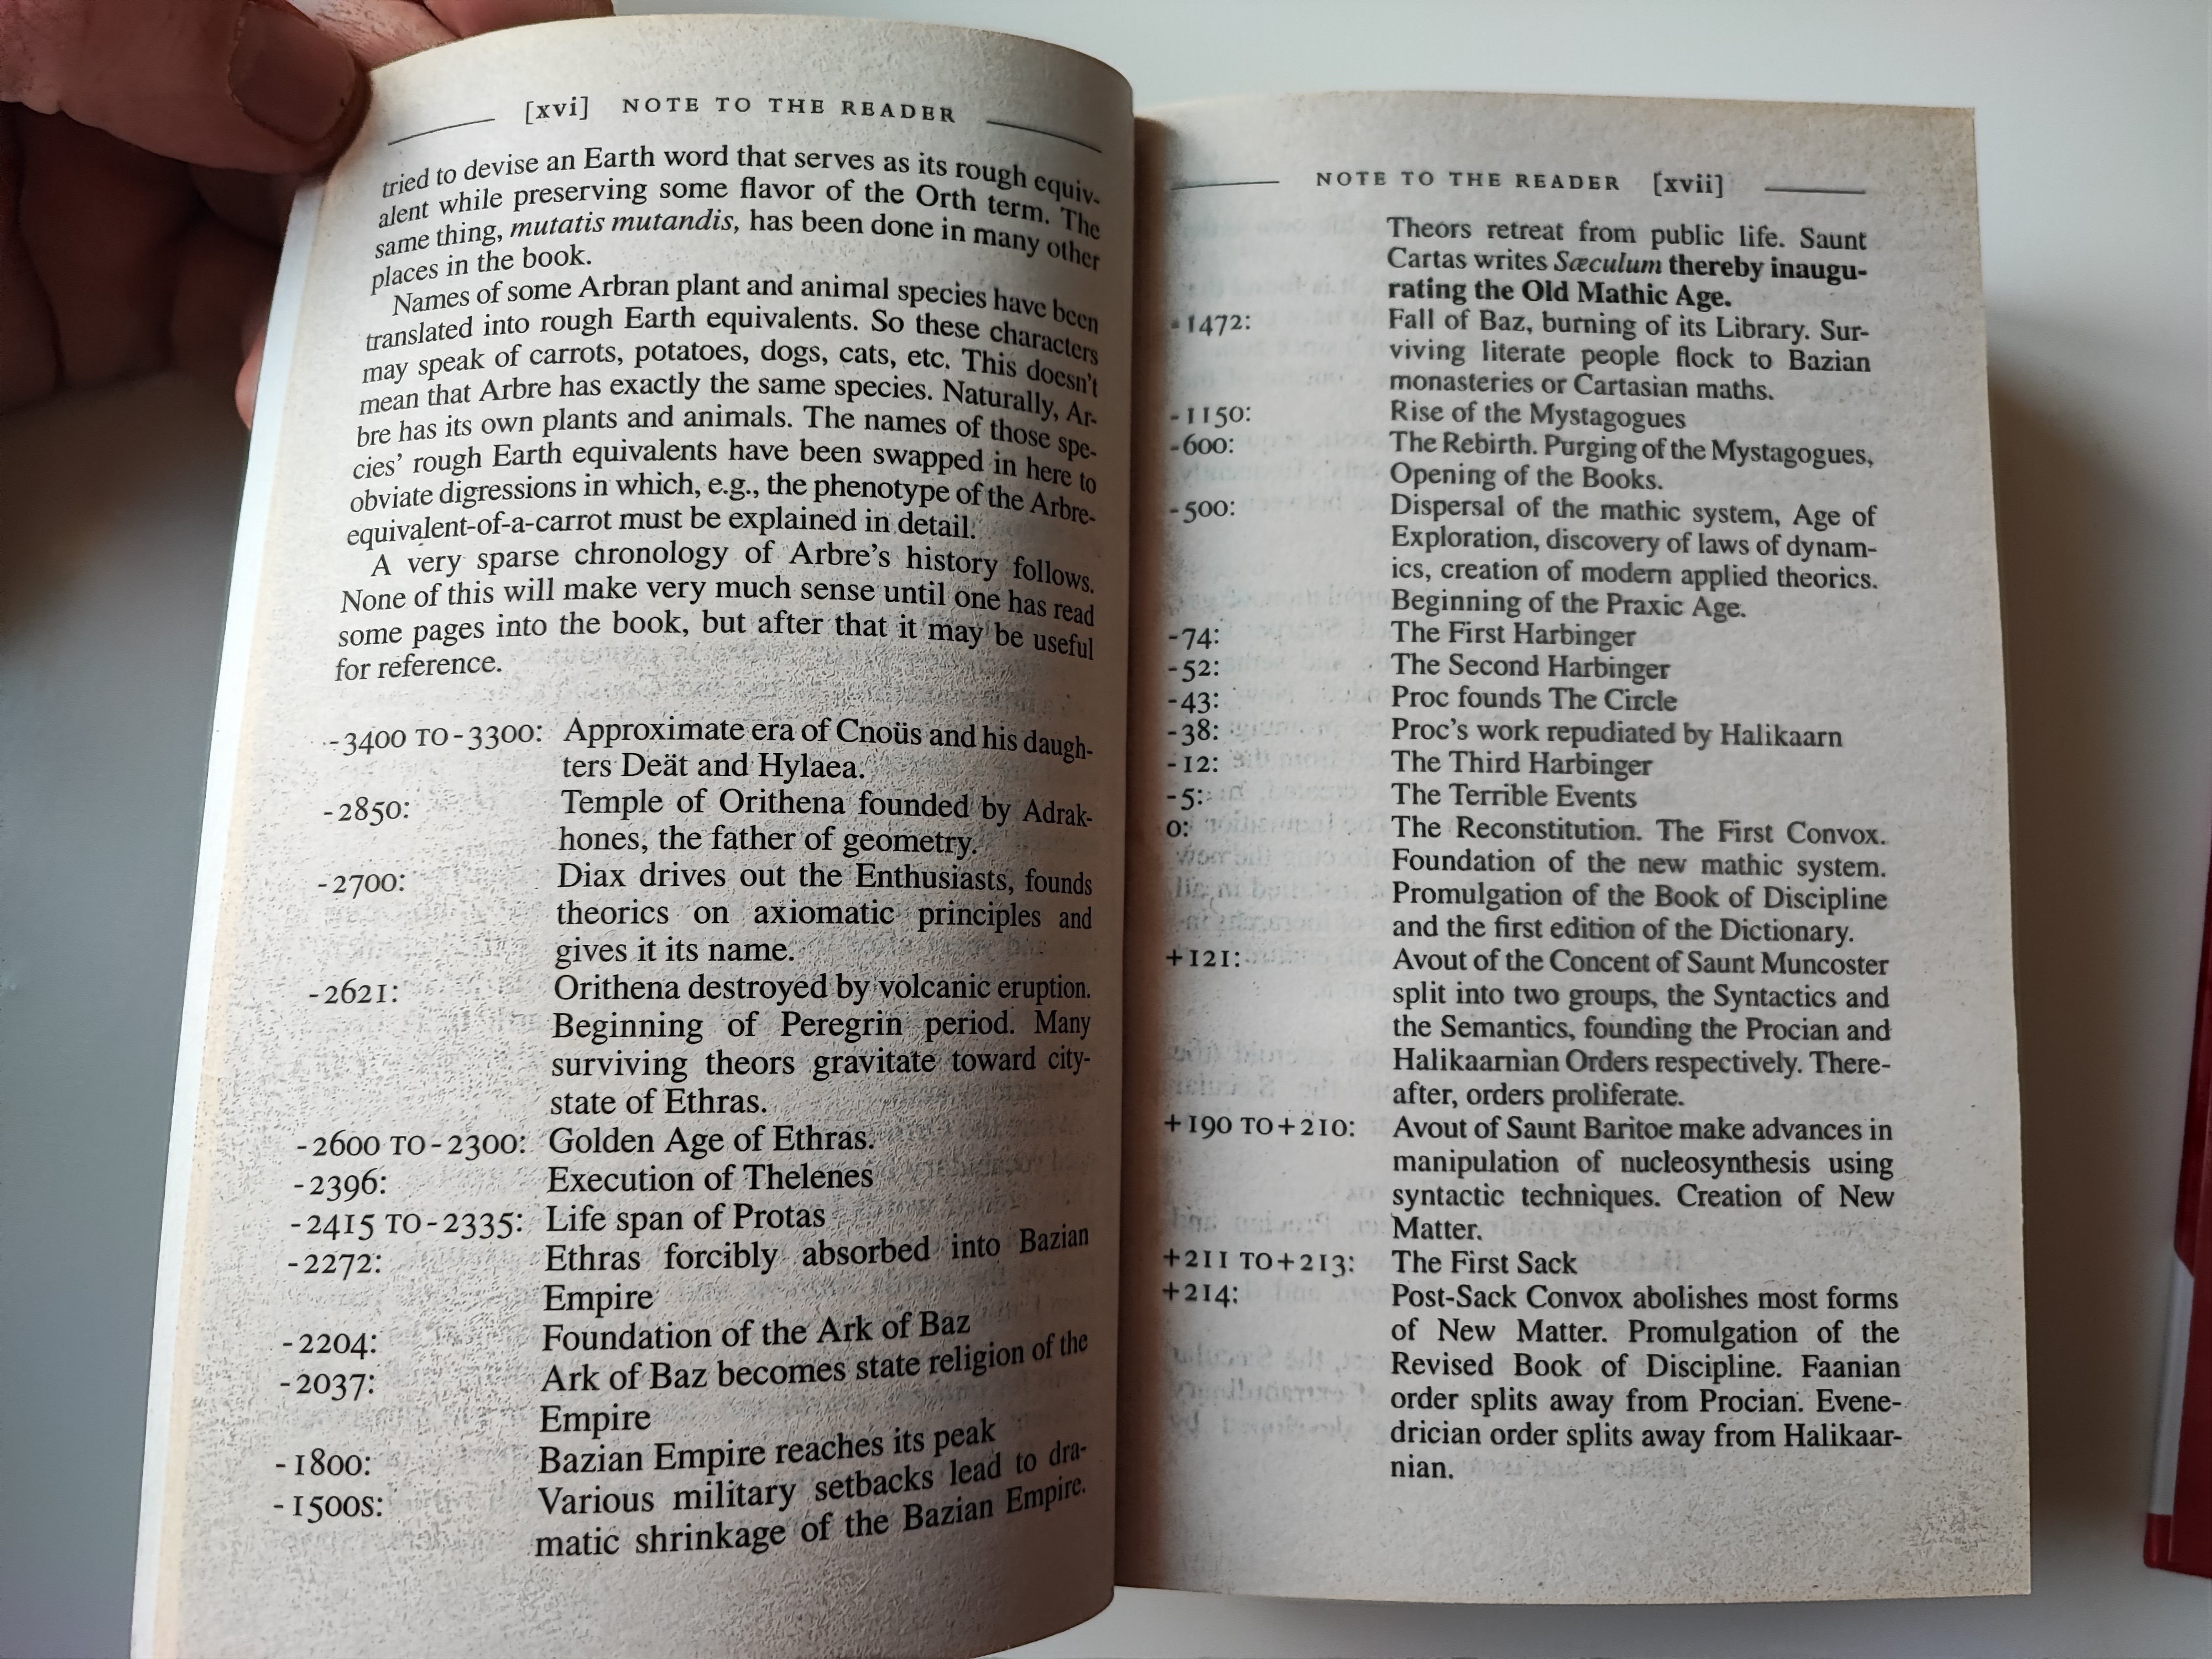 Aufgeschlagenes Buch, dass eine Liste historischer Ereignisse aus Neil Stephenson's 'Anathem' zeigt.